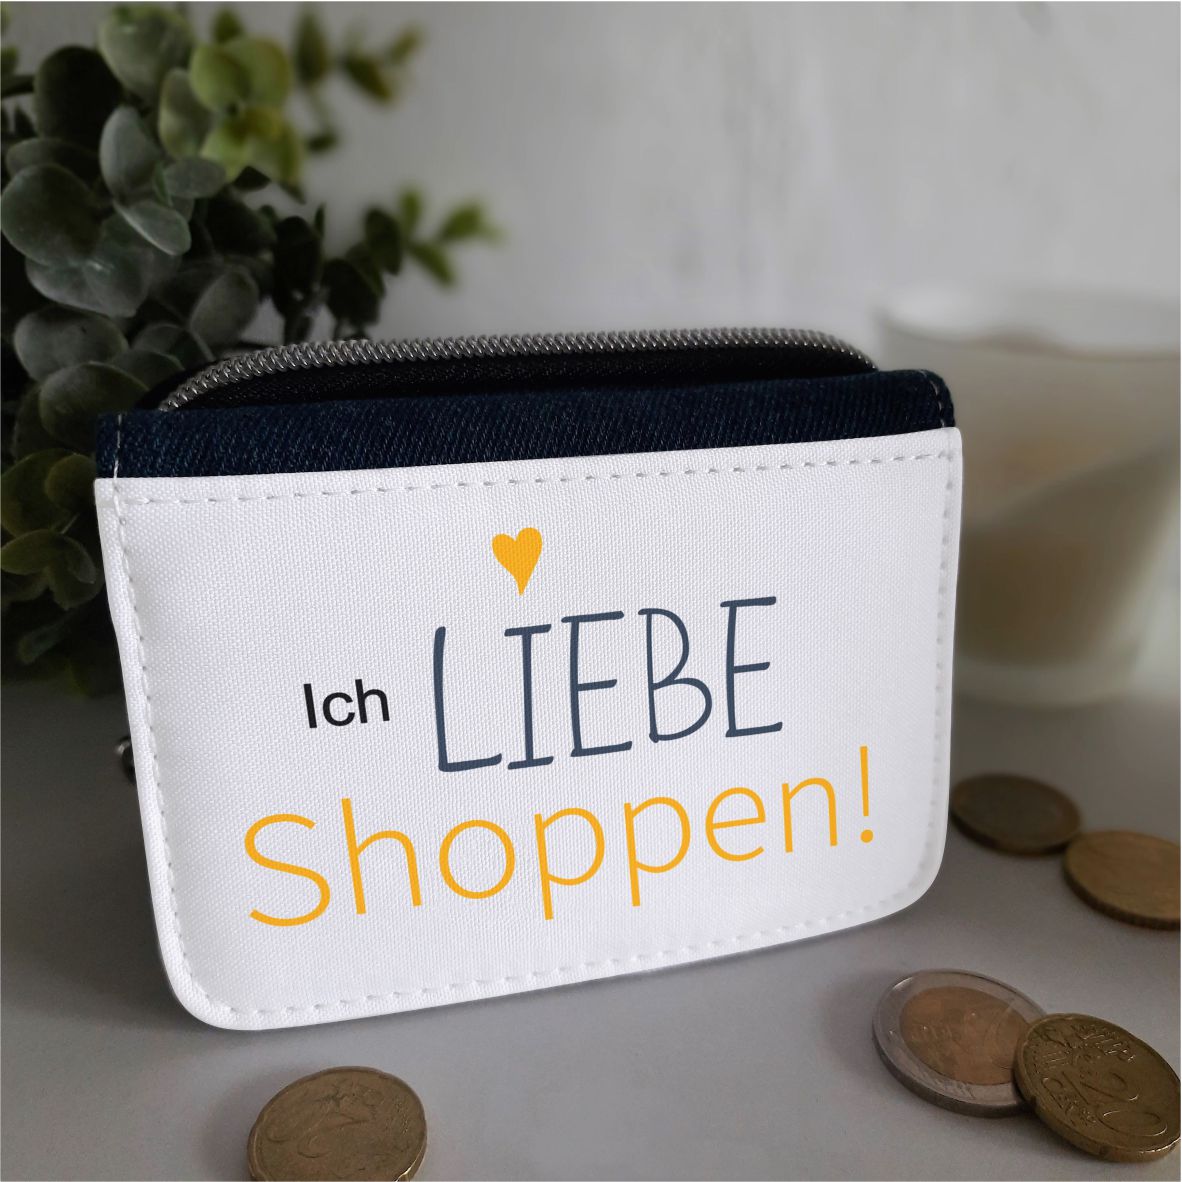 Textil Geldbörse "Ich liebe Shoppen", jeansblau